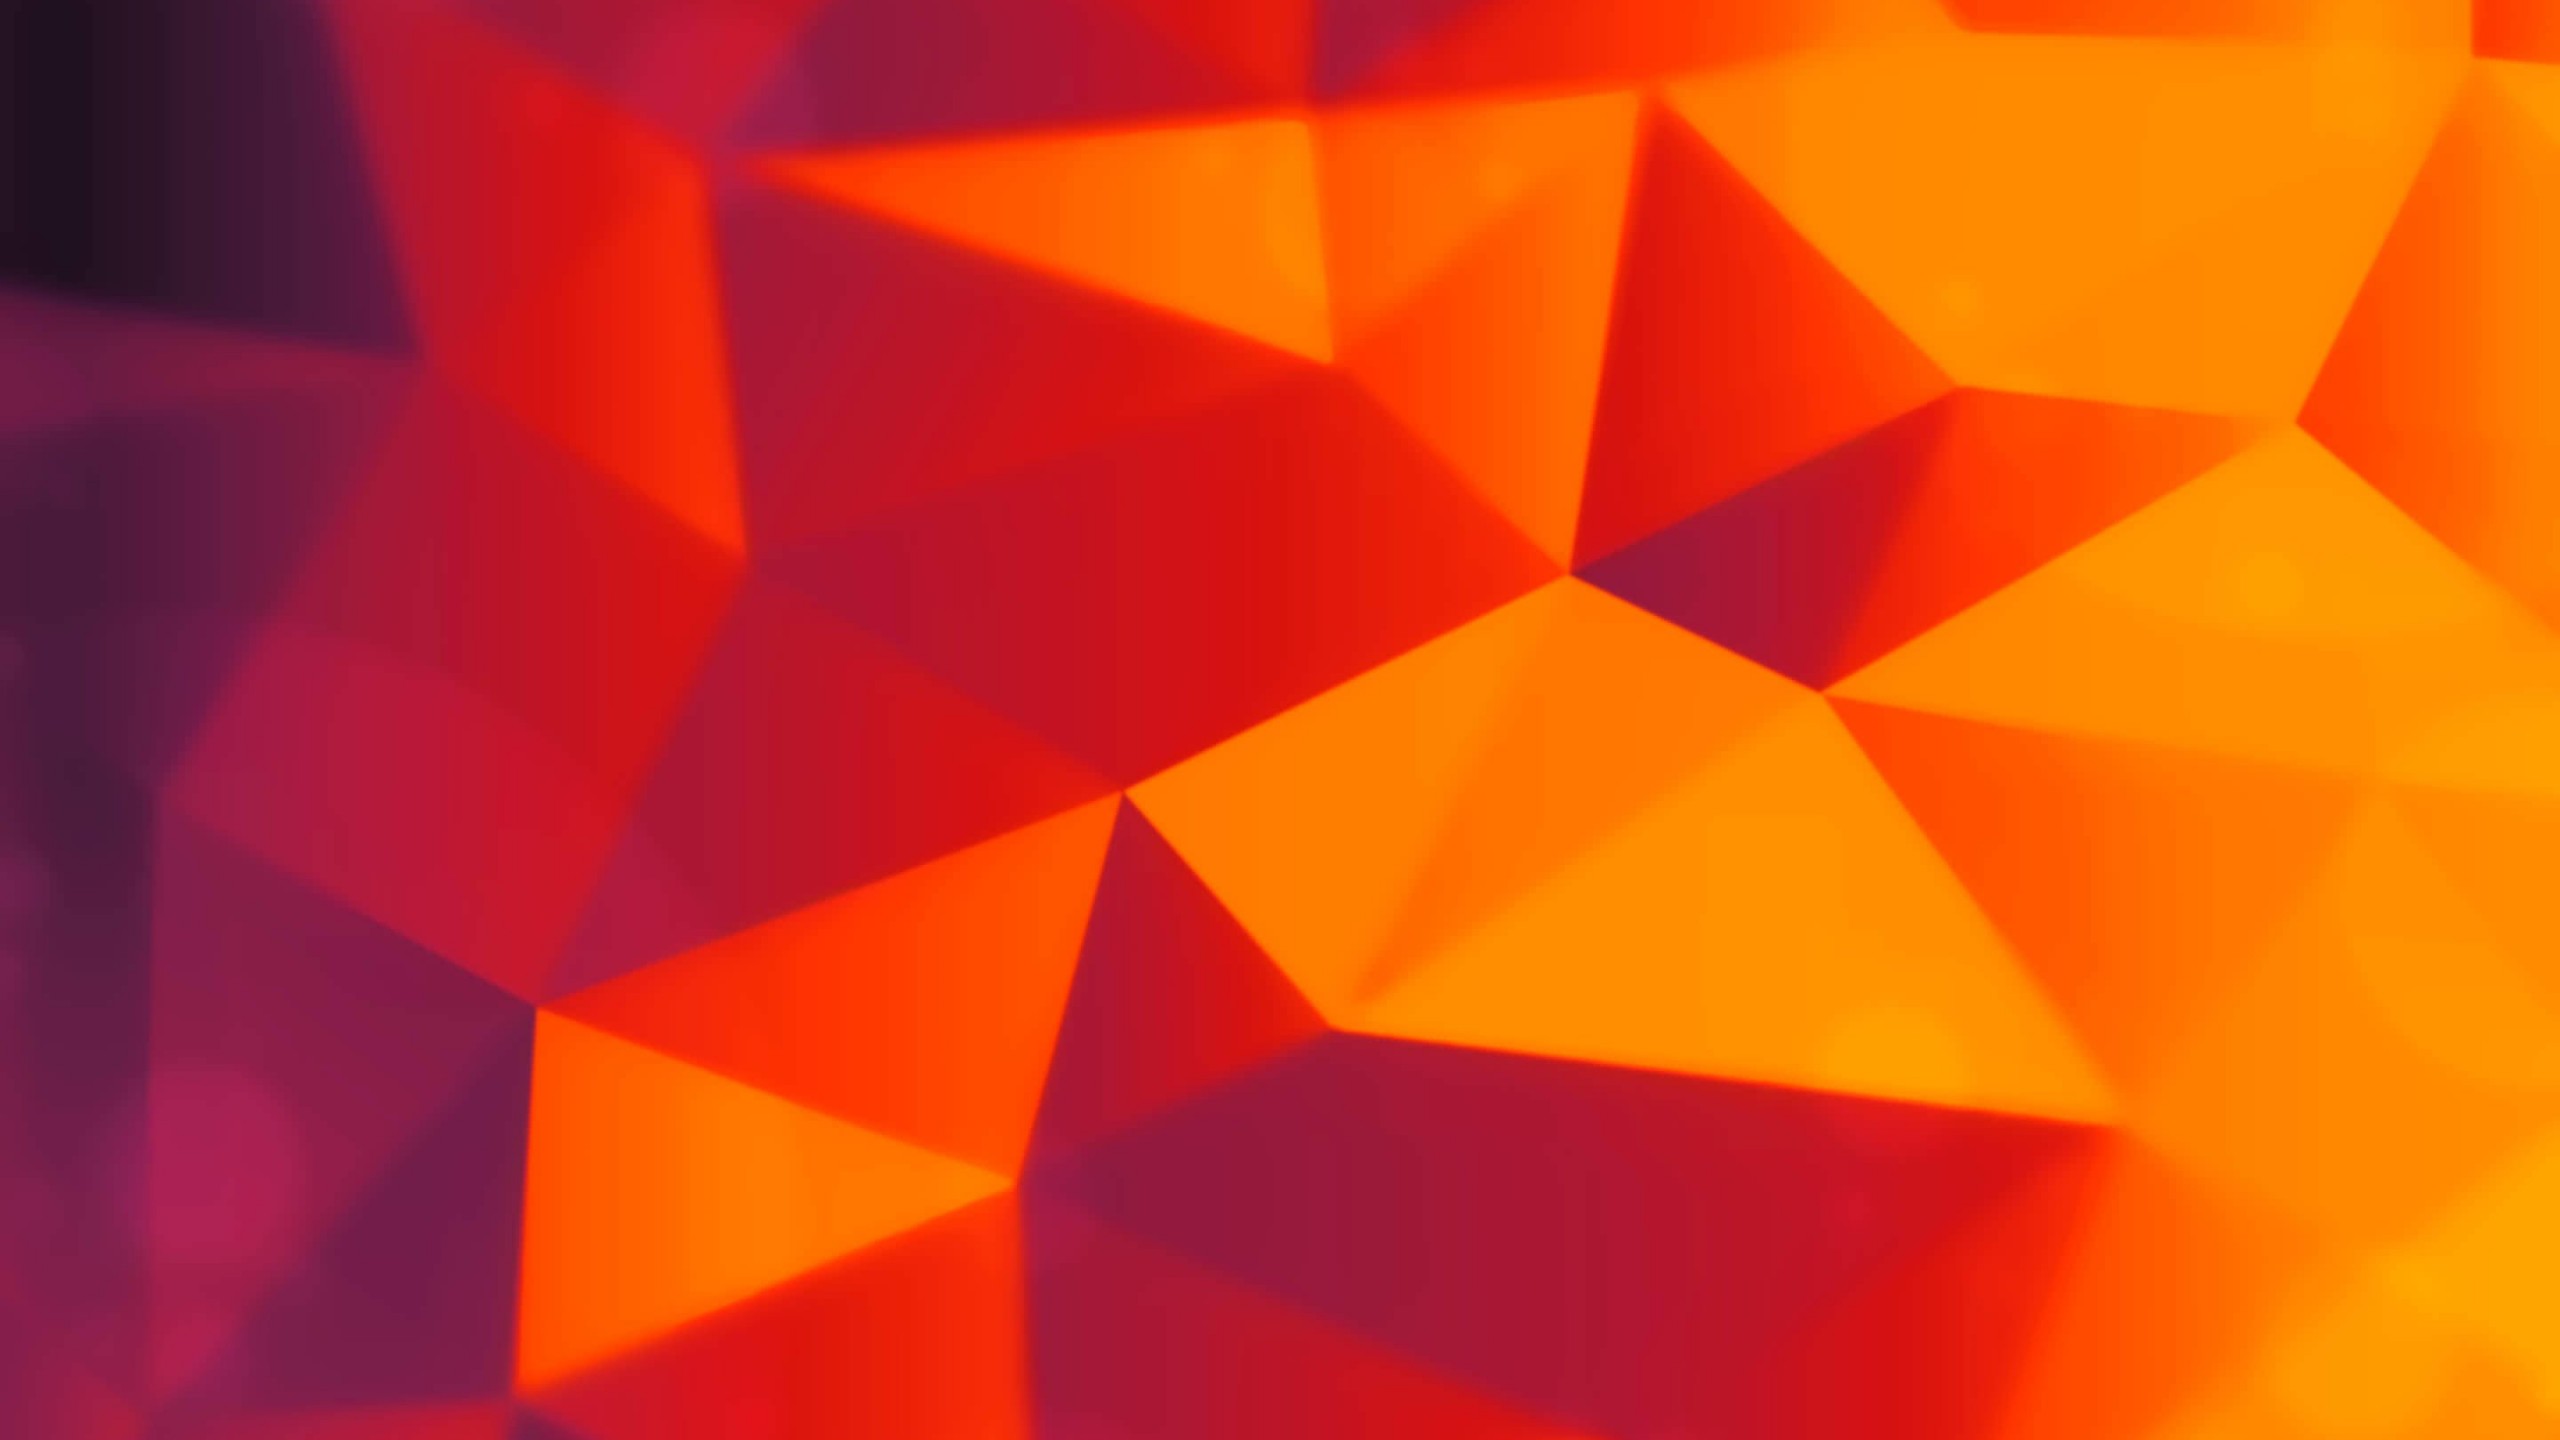 Orange Polygons Wallpaper for Social Media YouTube Channel Art